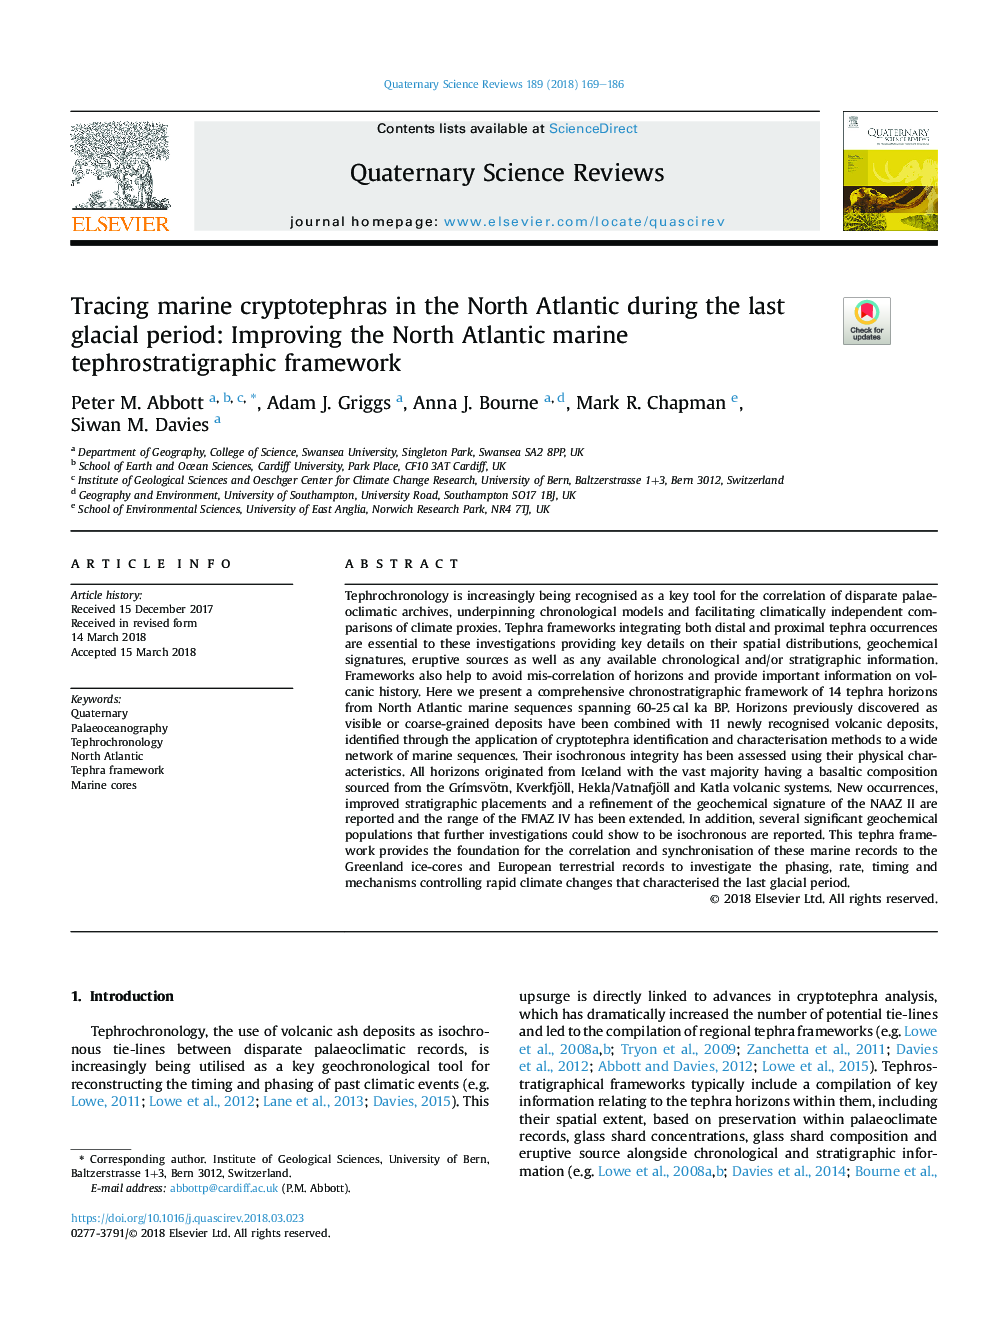 ردیابی کریپتوفراس دریایی در اقیانوس اطلس شمالی در آخرین دوره یخبندان: بهبود چارچوب تفتروستاتوگرافی دریای شمال آتلانتیک